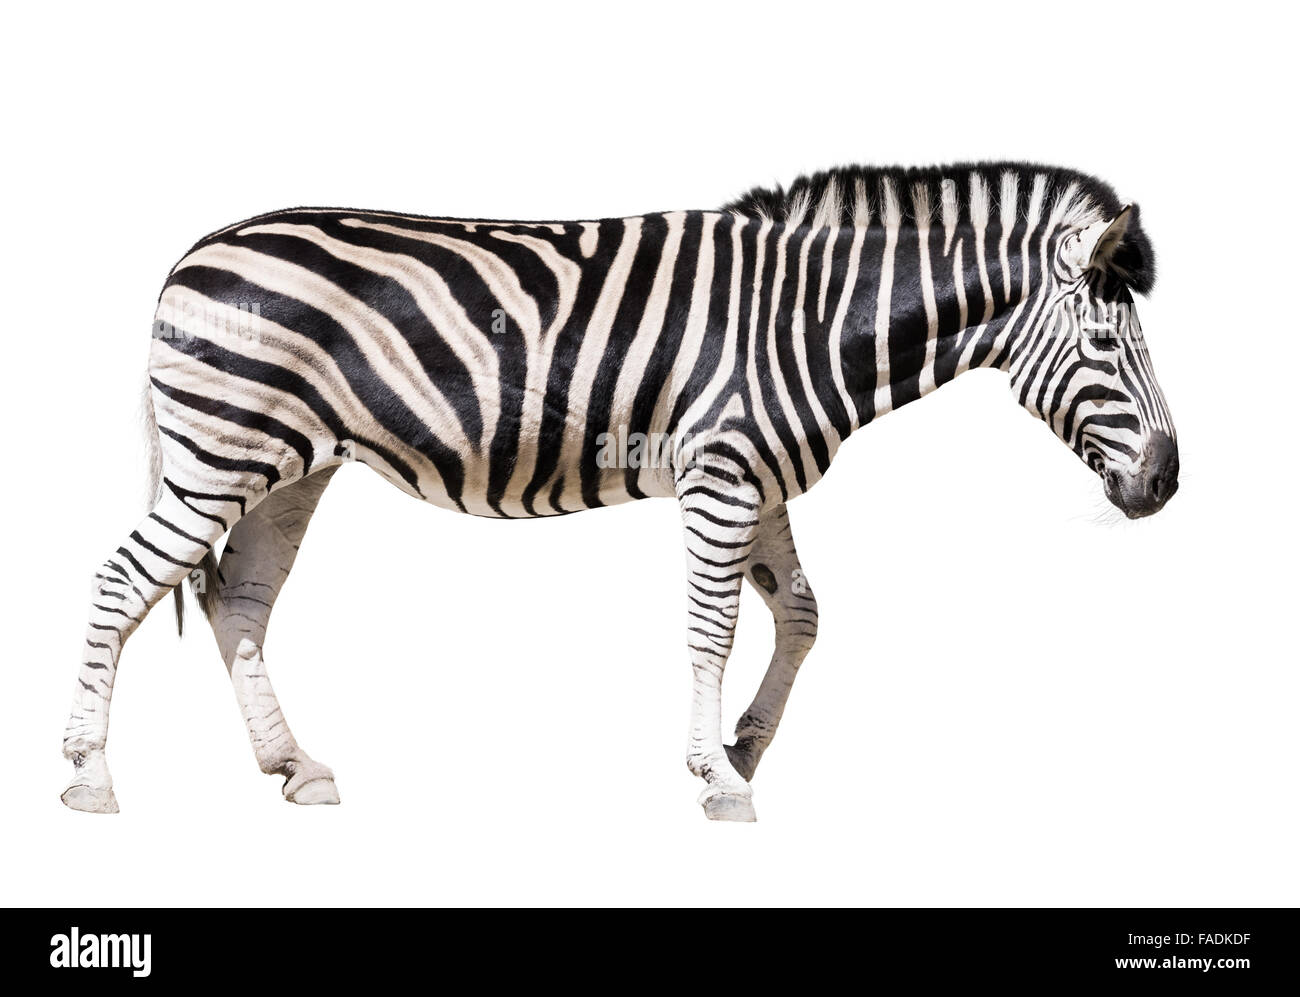 Full length of zebra. Isolated on white background Stock Photo - Alamy